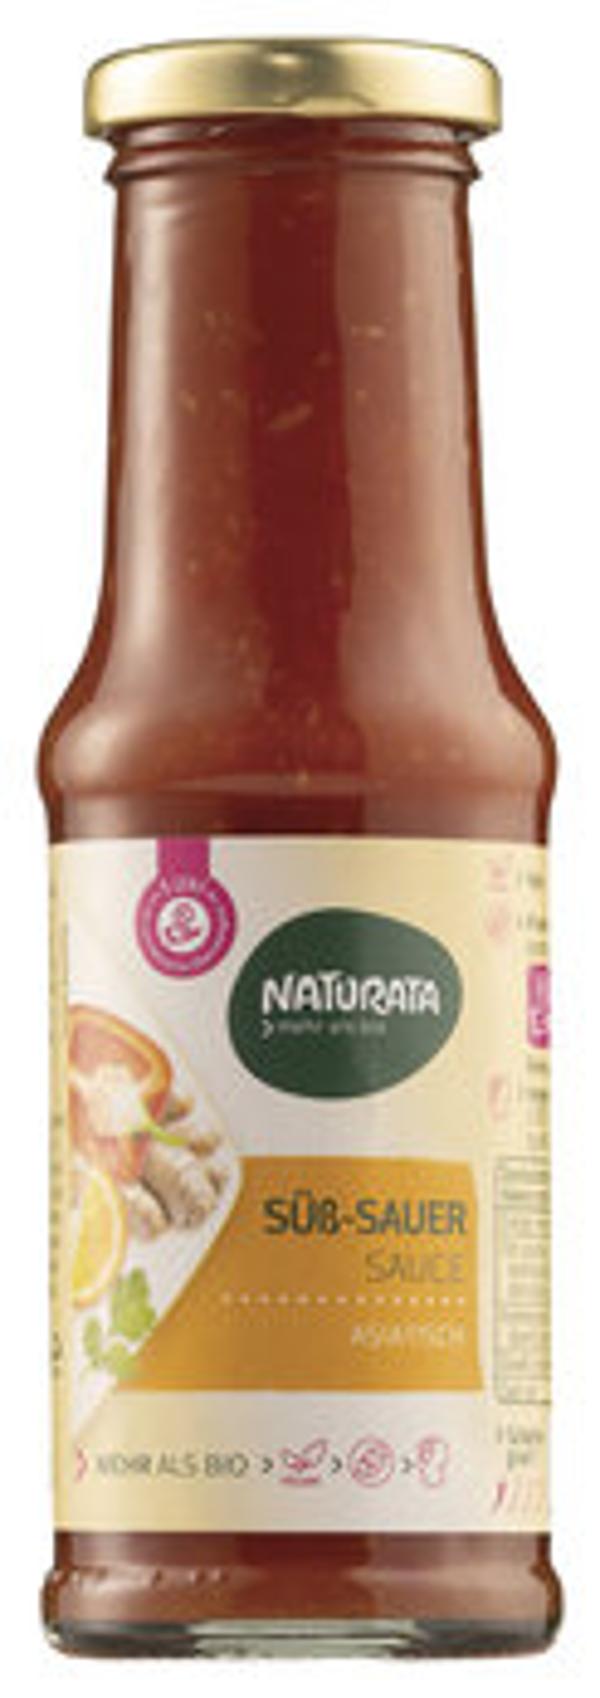 Produktfoto zu Naturata Süß Sauer Sauce 250ml